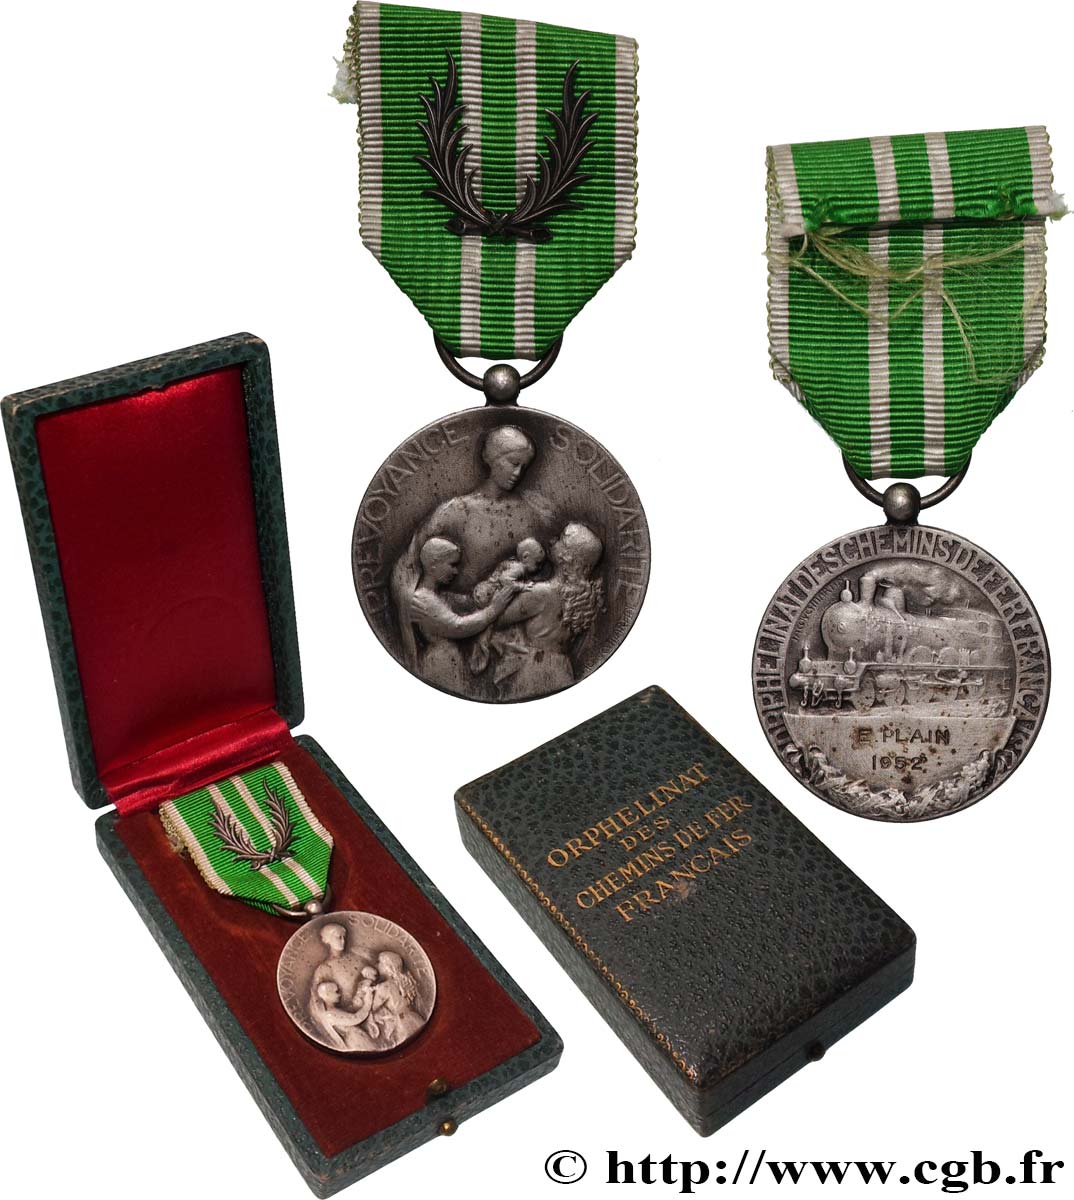 TRANSPORTATION AND RAILWAYS Médaille de l’orphelinat des chemins de fer AU